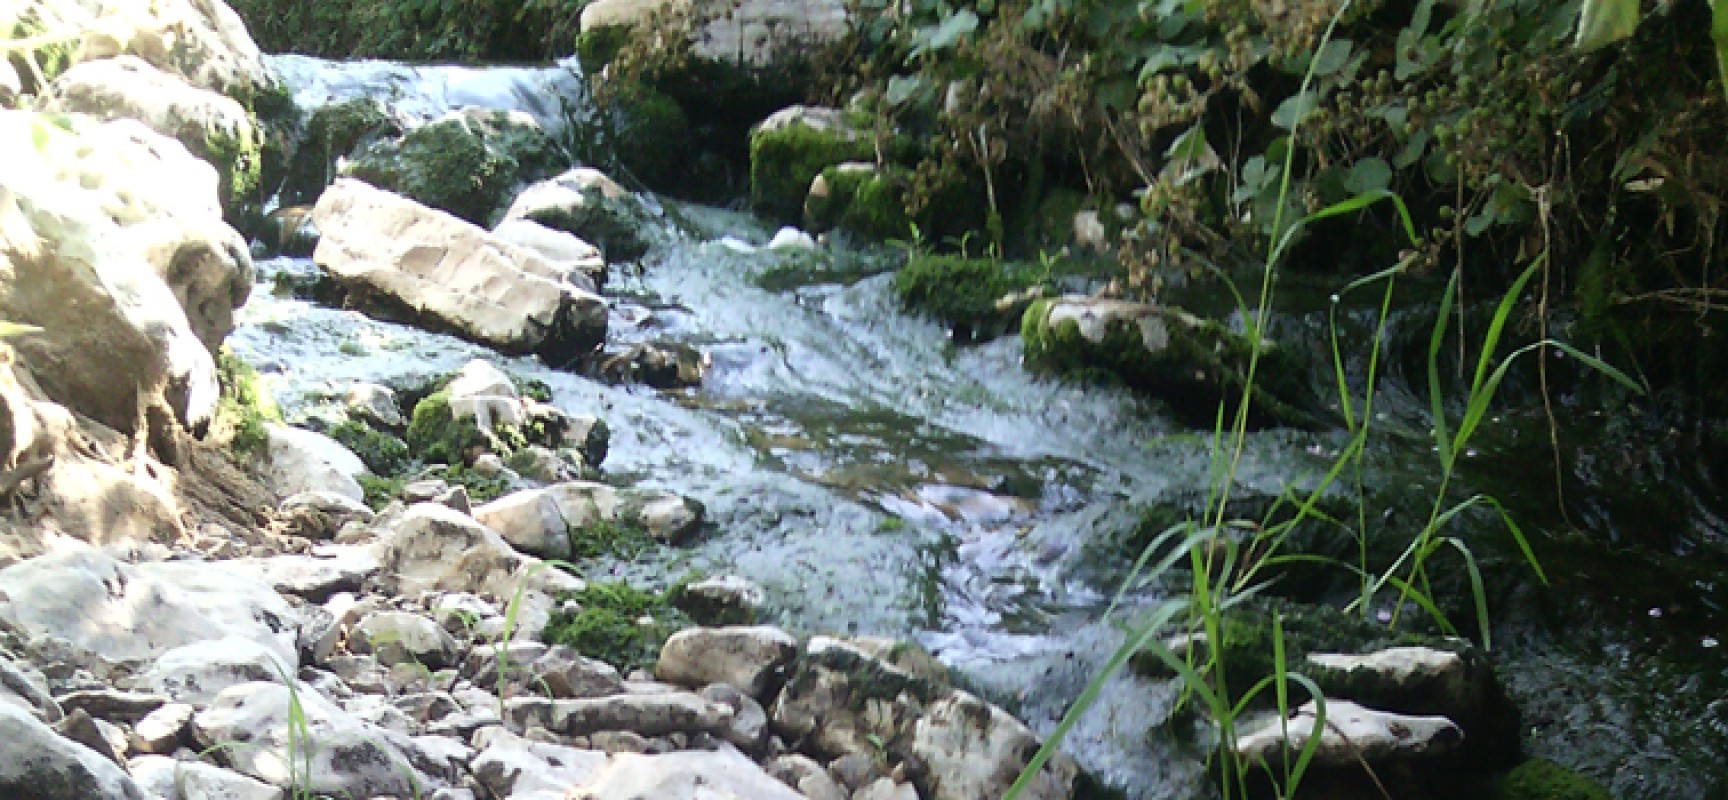 Cittadini in Movimento a 5 Stelle: “Riutilizzare acque reflue per uso agricolo”